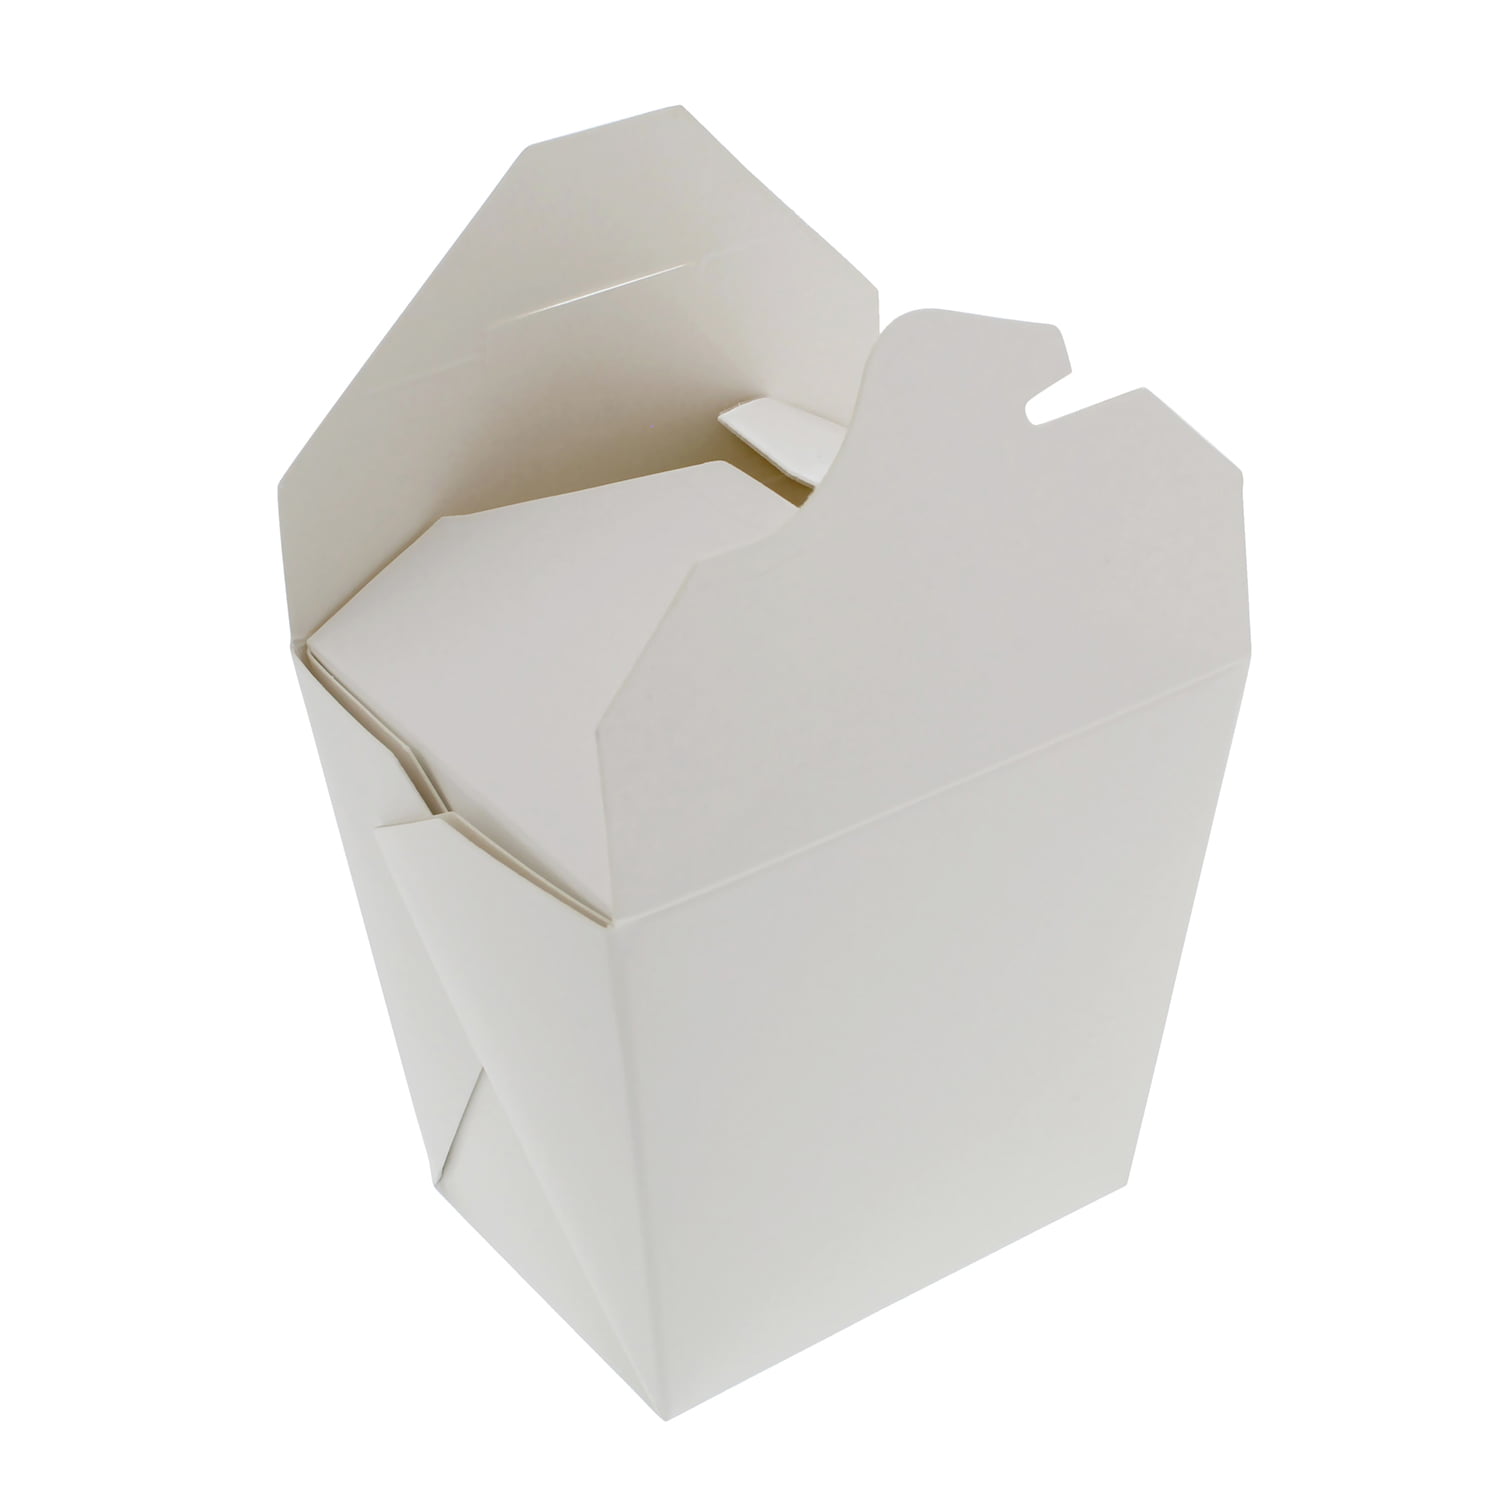 White Take Out Boxes by Celebrate It™, 10 ct.